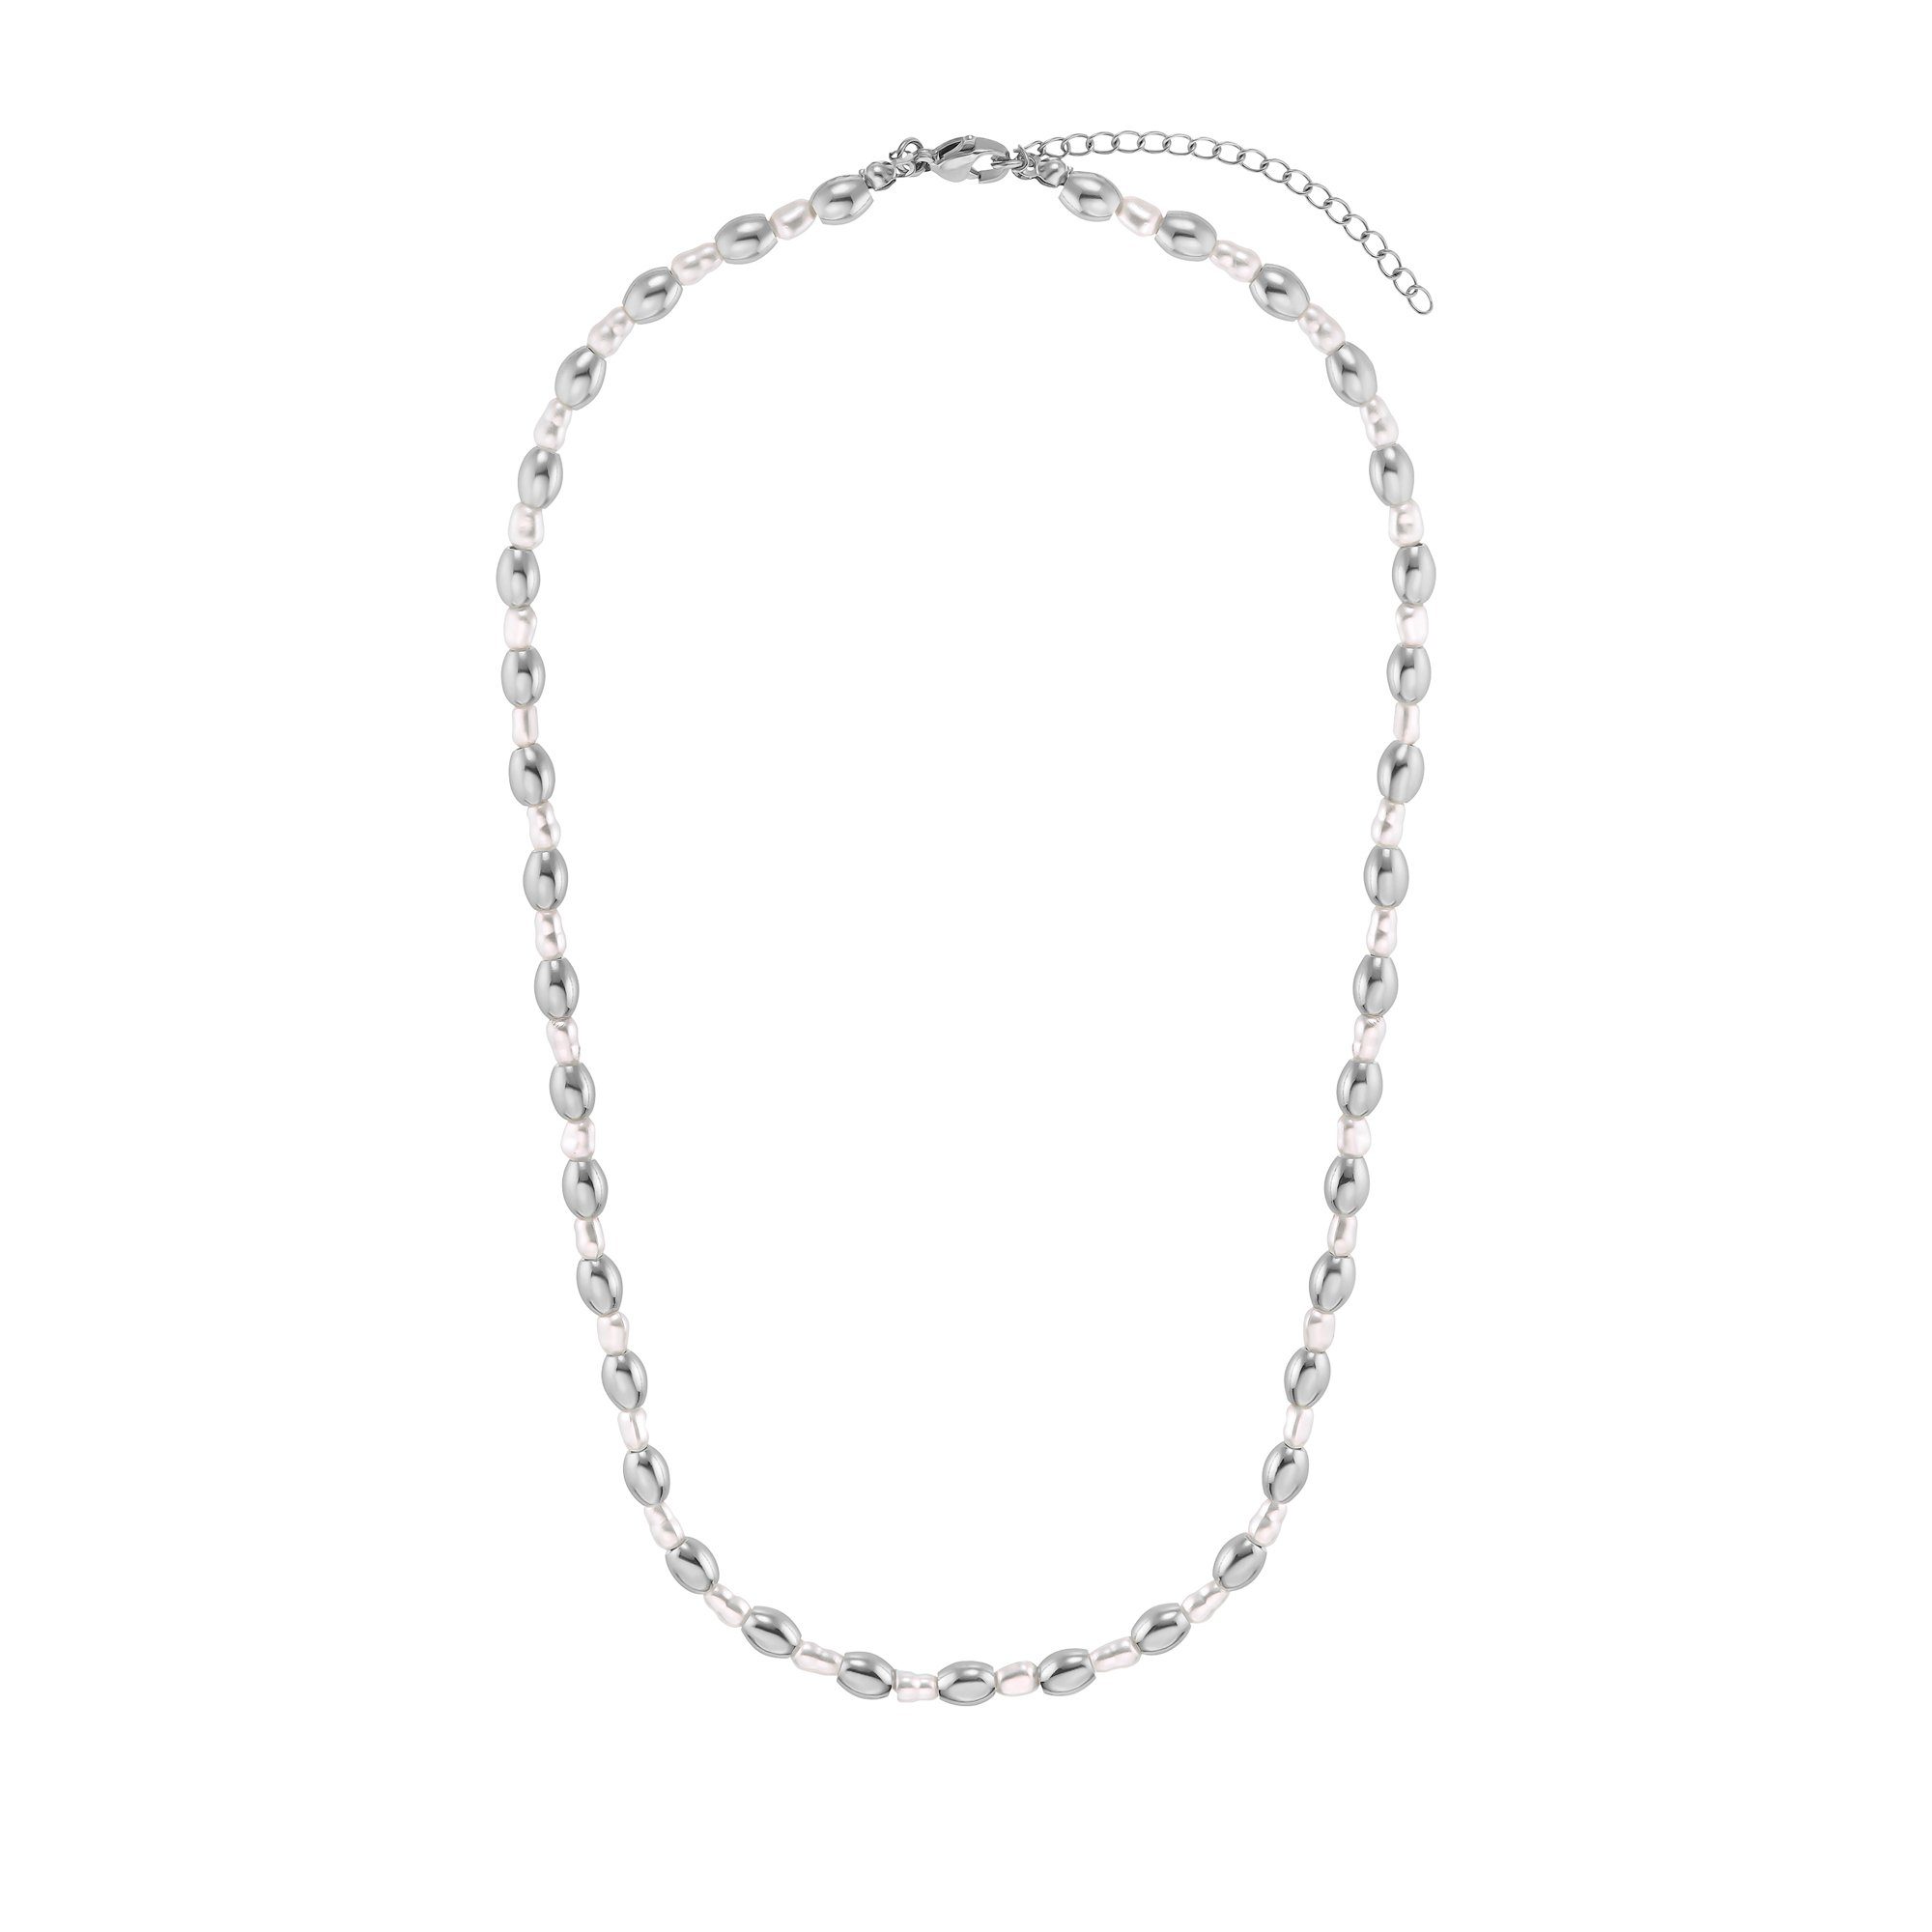 Heideman Collier Maya (inkl. Geschenkverpackung), mit Perlen silberfarben poliert ausgefallenen Halskette